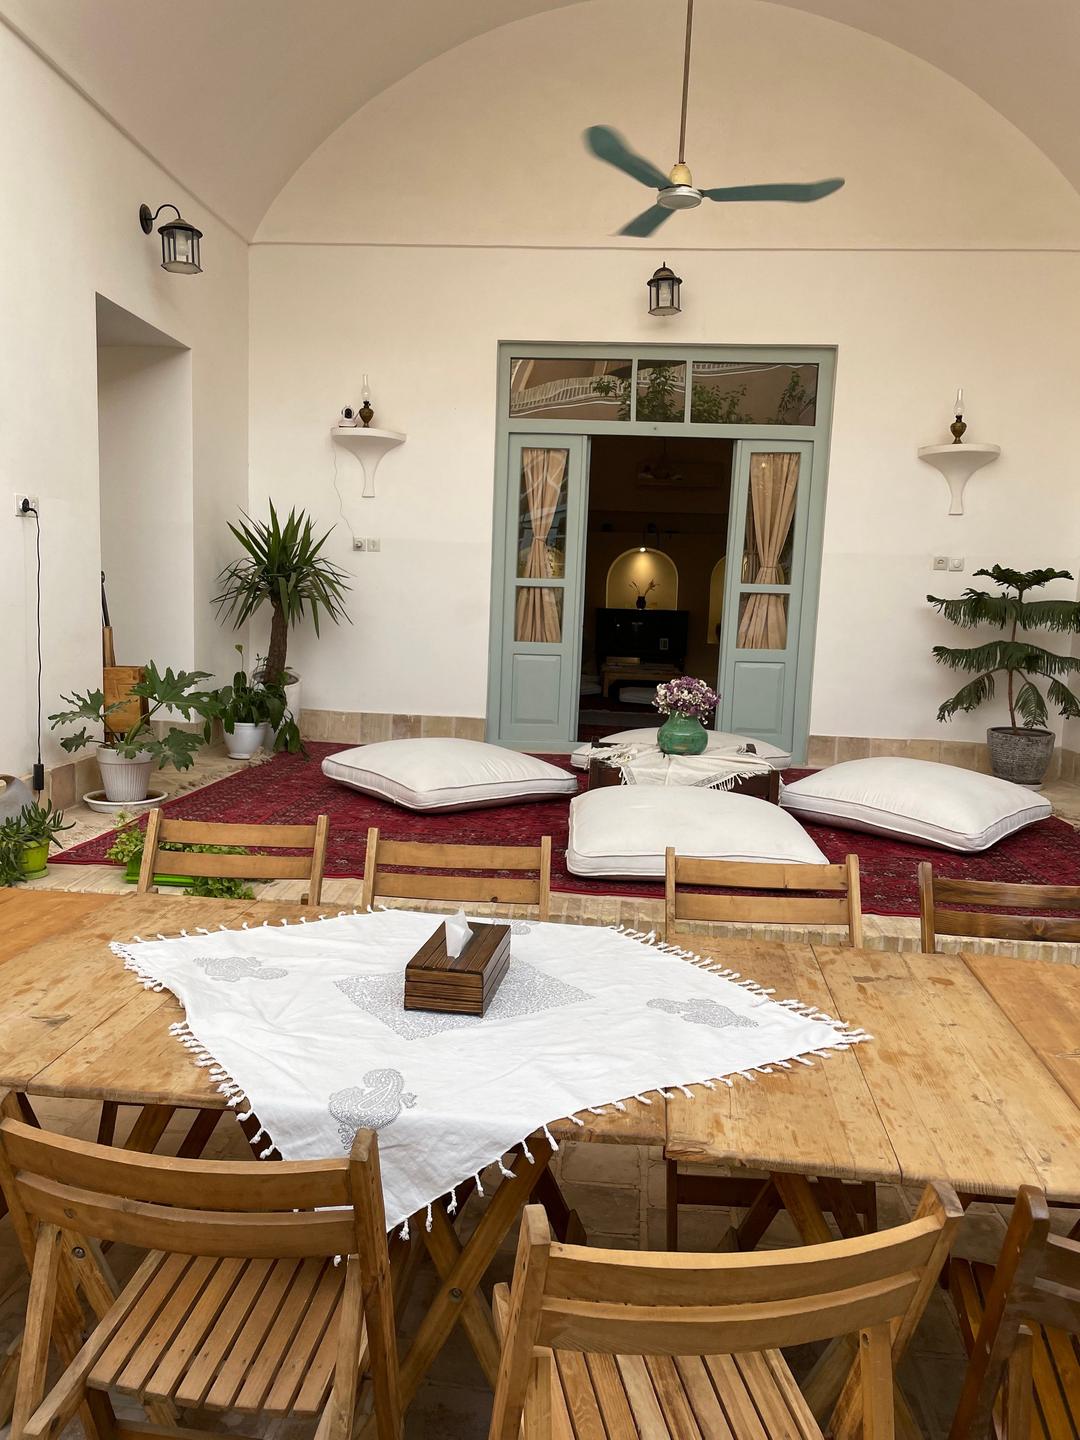 Innenhof des Hotels "Wadi-Haus" mit Blick in den Gemeinschaftsraum mit Holztisch, Stühlen und großen weißen Kissen am Boden.